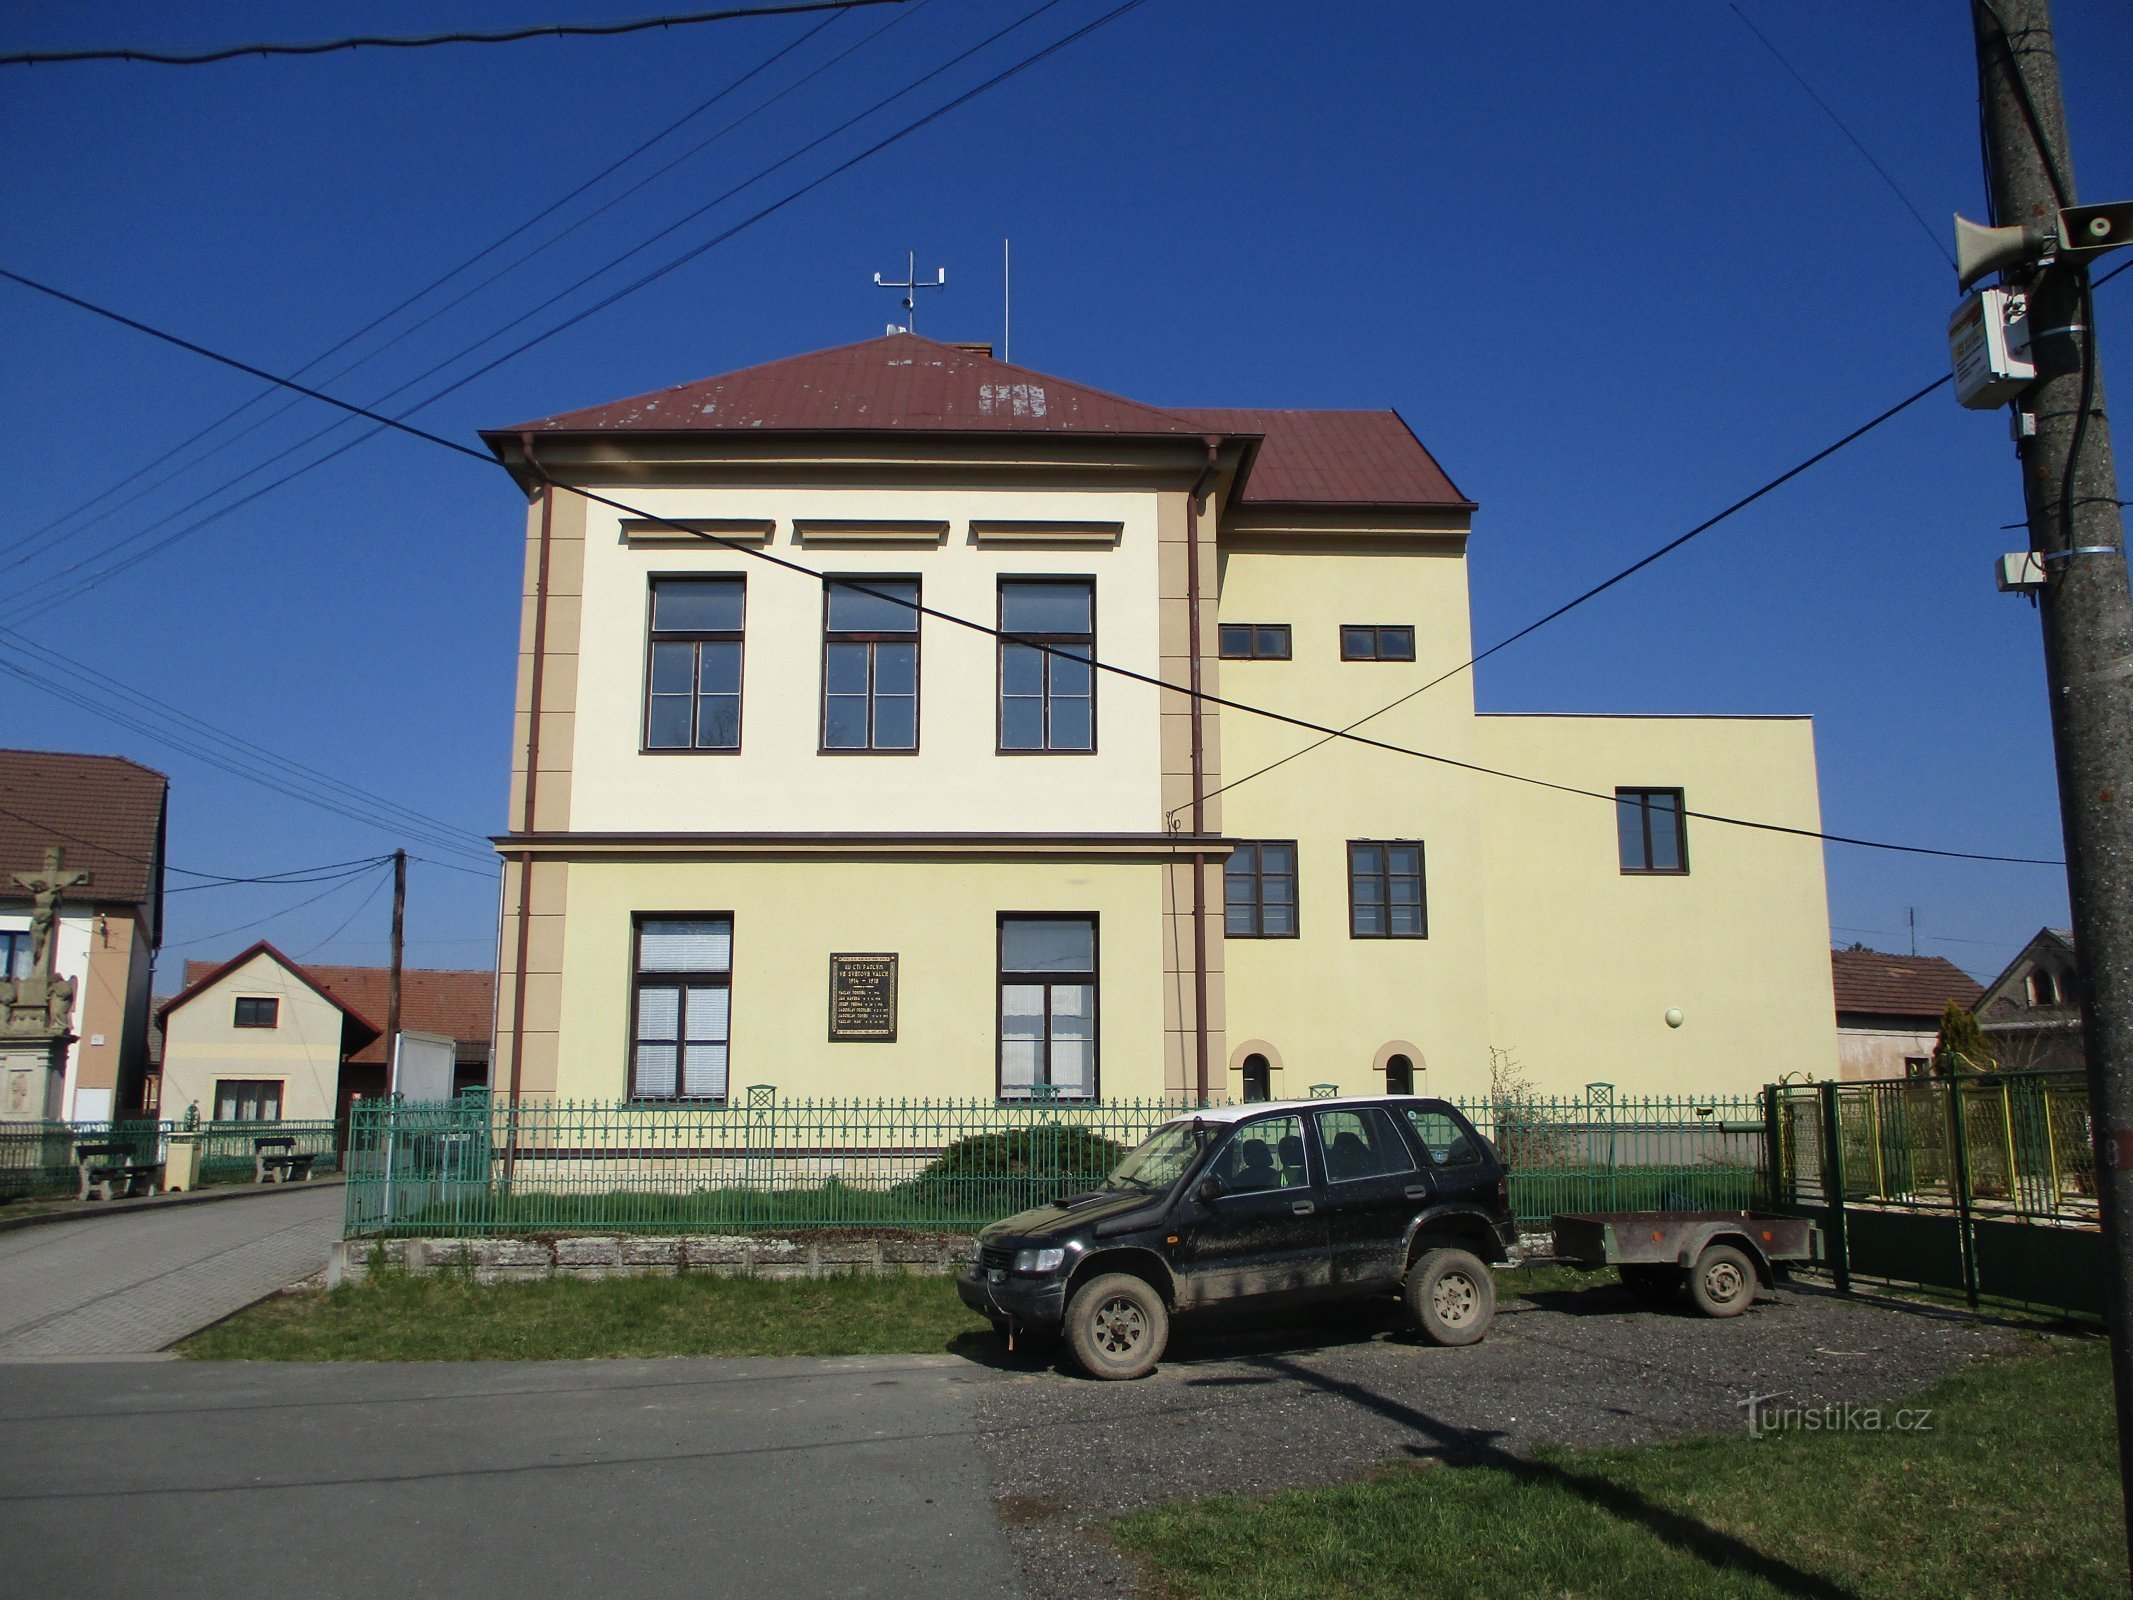 Trường mở rộng (Račice nad Trotinou, ngày 2.4.2020 tháng XNUMX năm XNUMX)